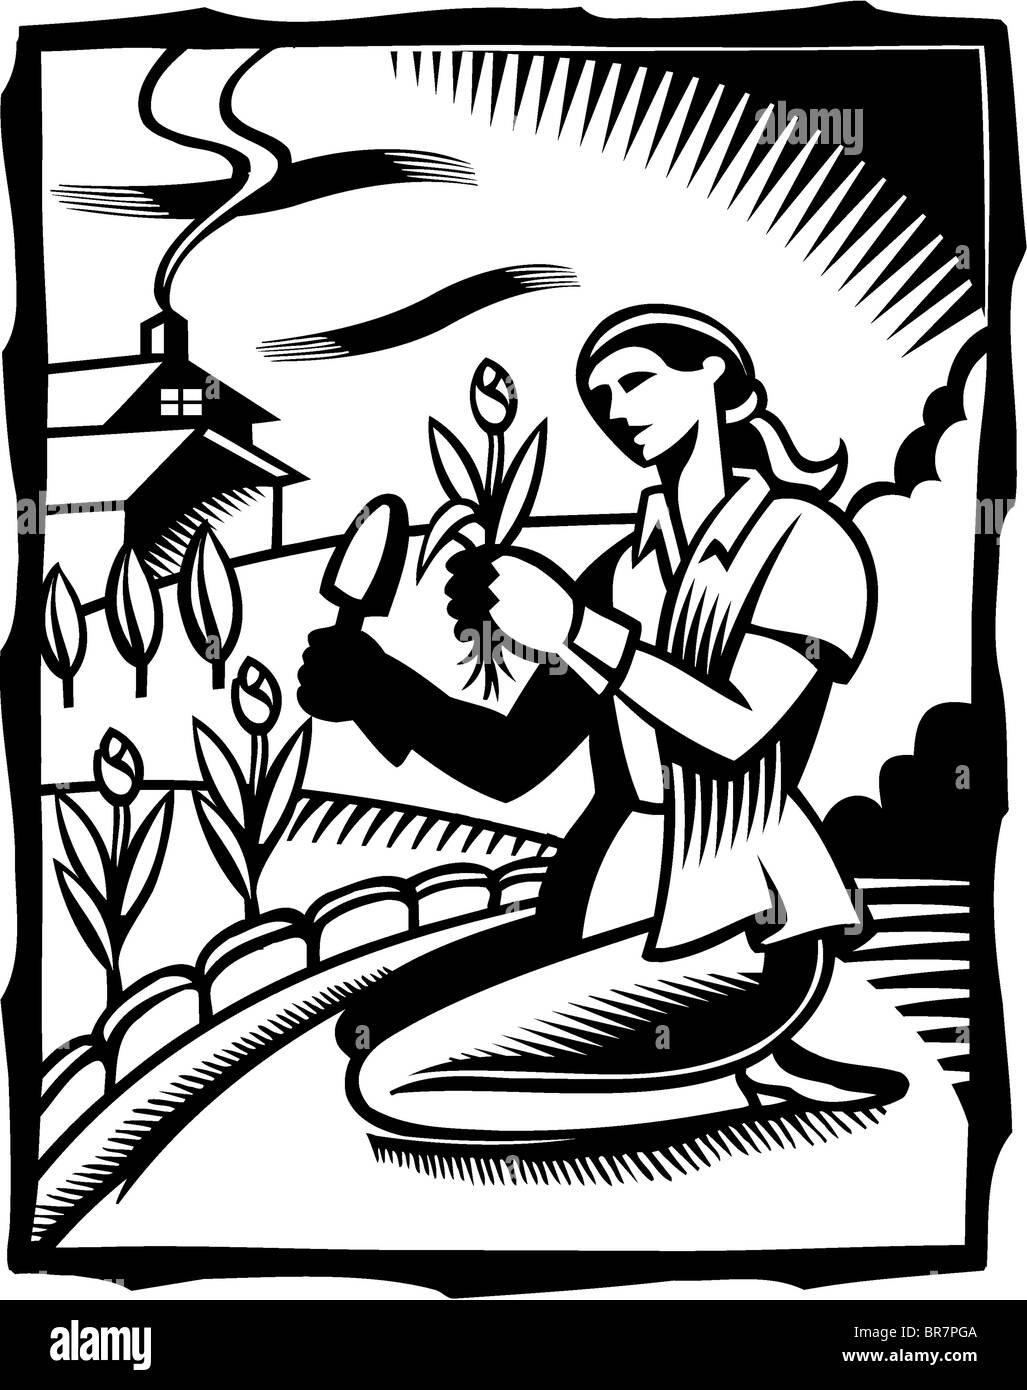 Un dessin en noir et blanc d'une femme faisant du jardinage Banque D'Images